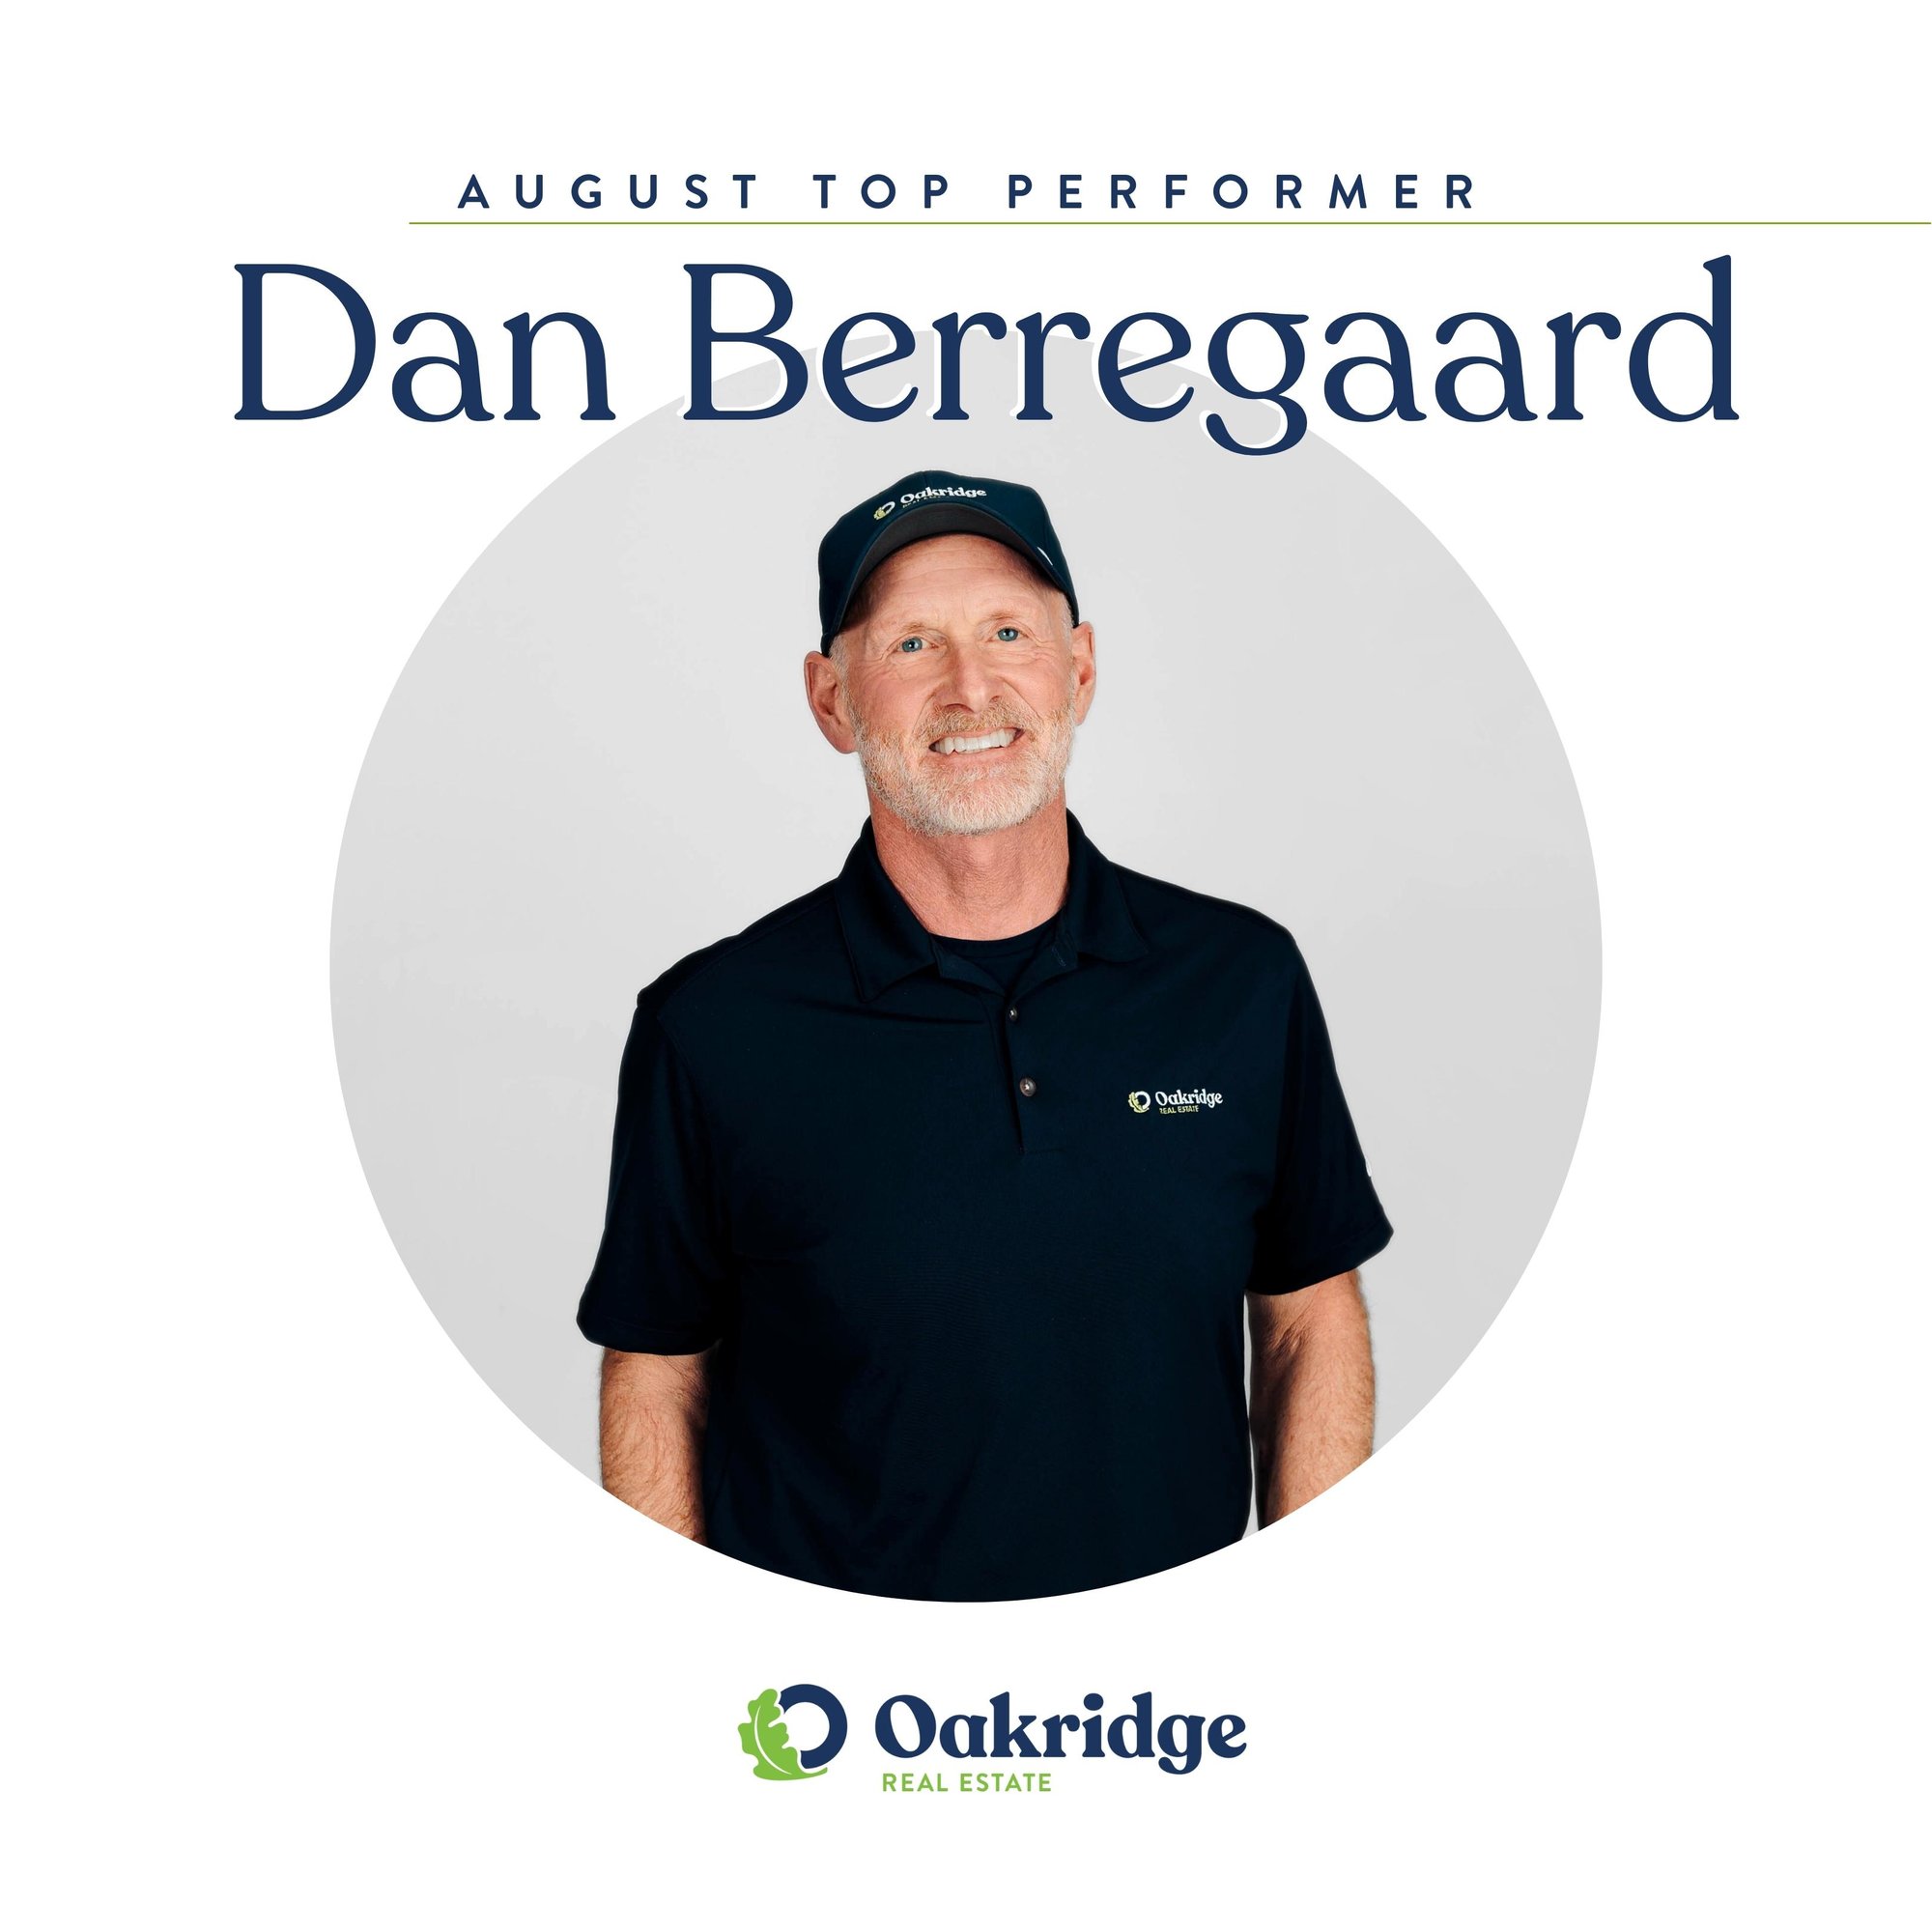 Dan Berregaard Oakridge Real Estate August Top Performer